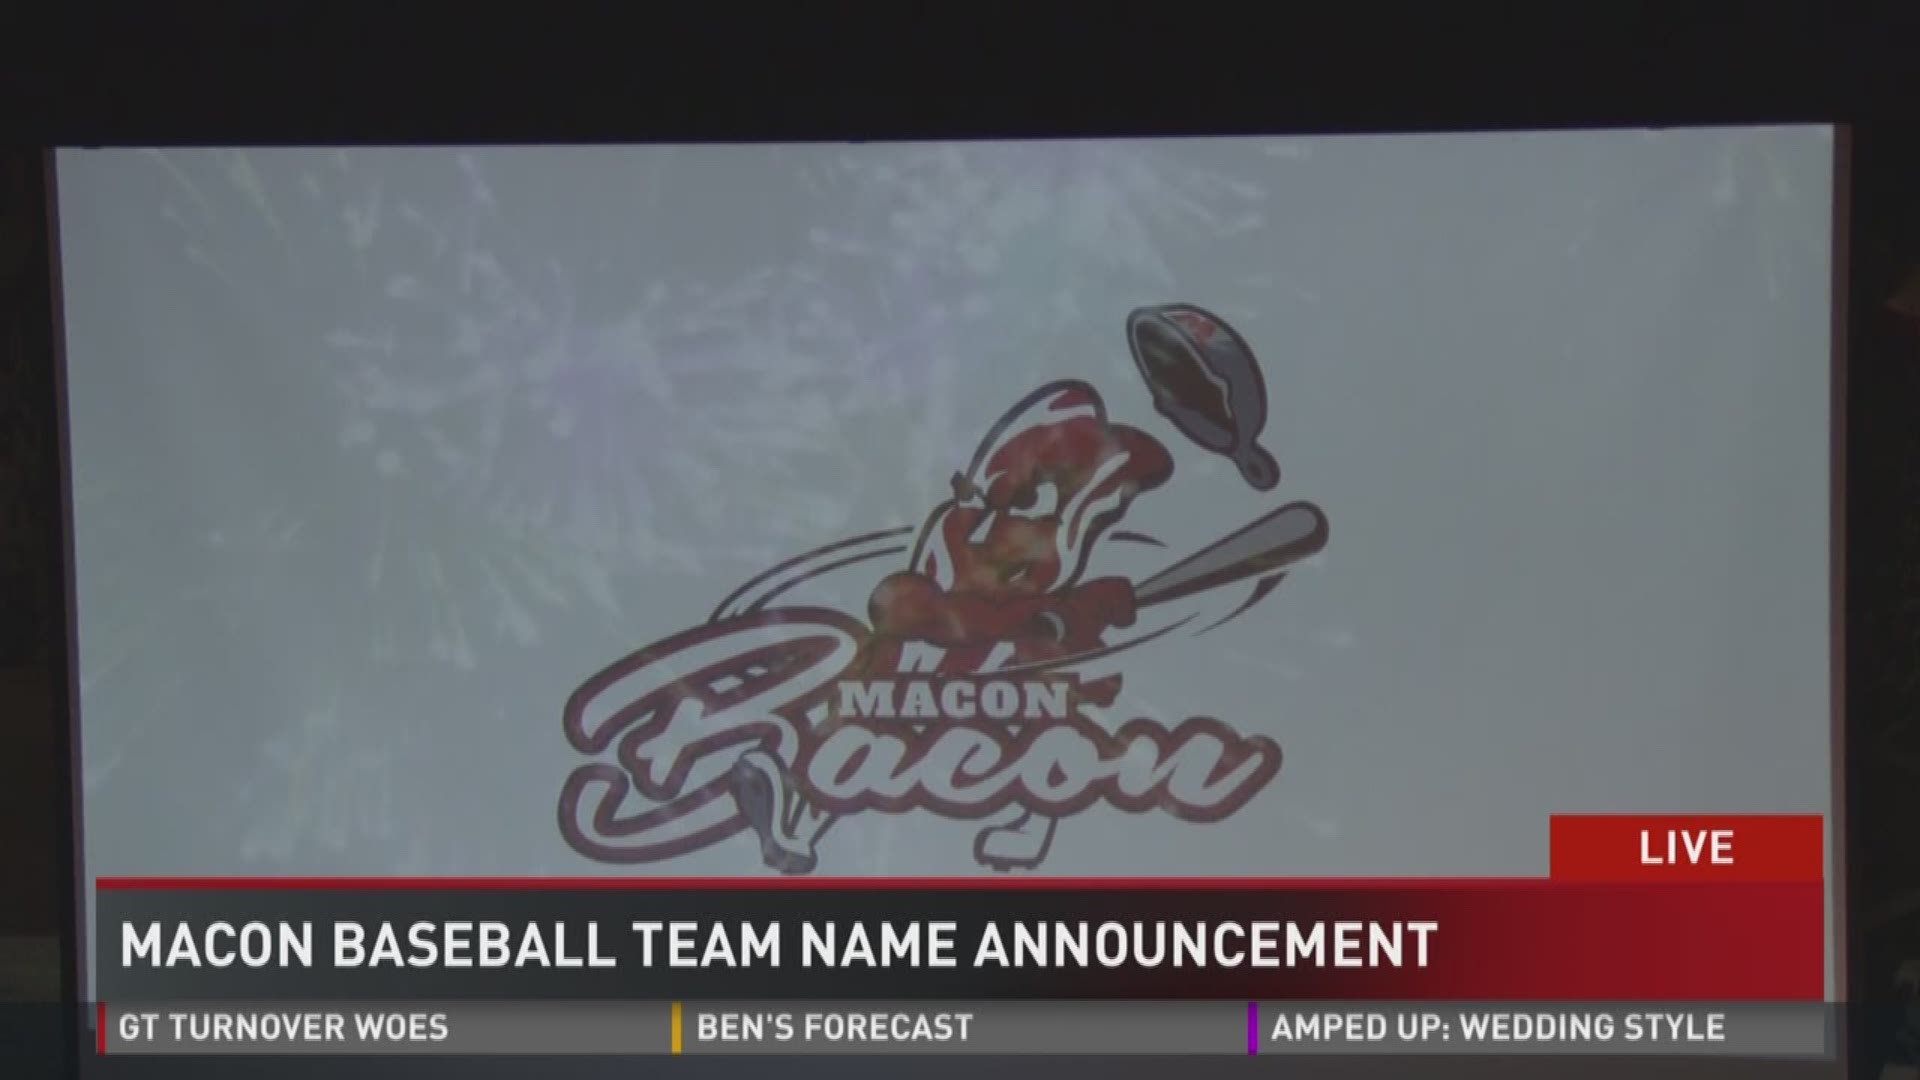 Macon Bacon chosen as new baseball team name